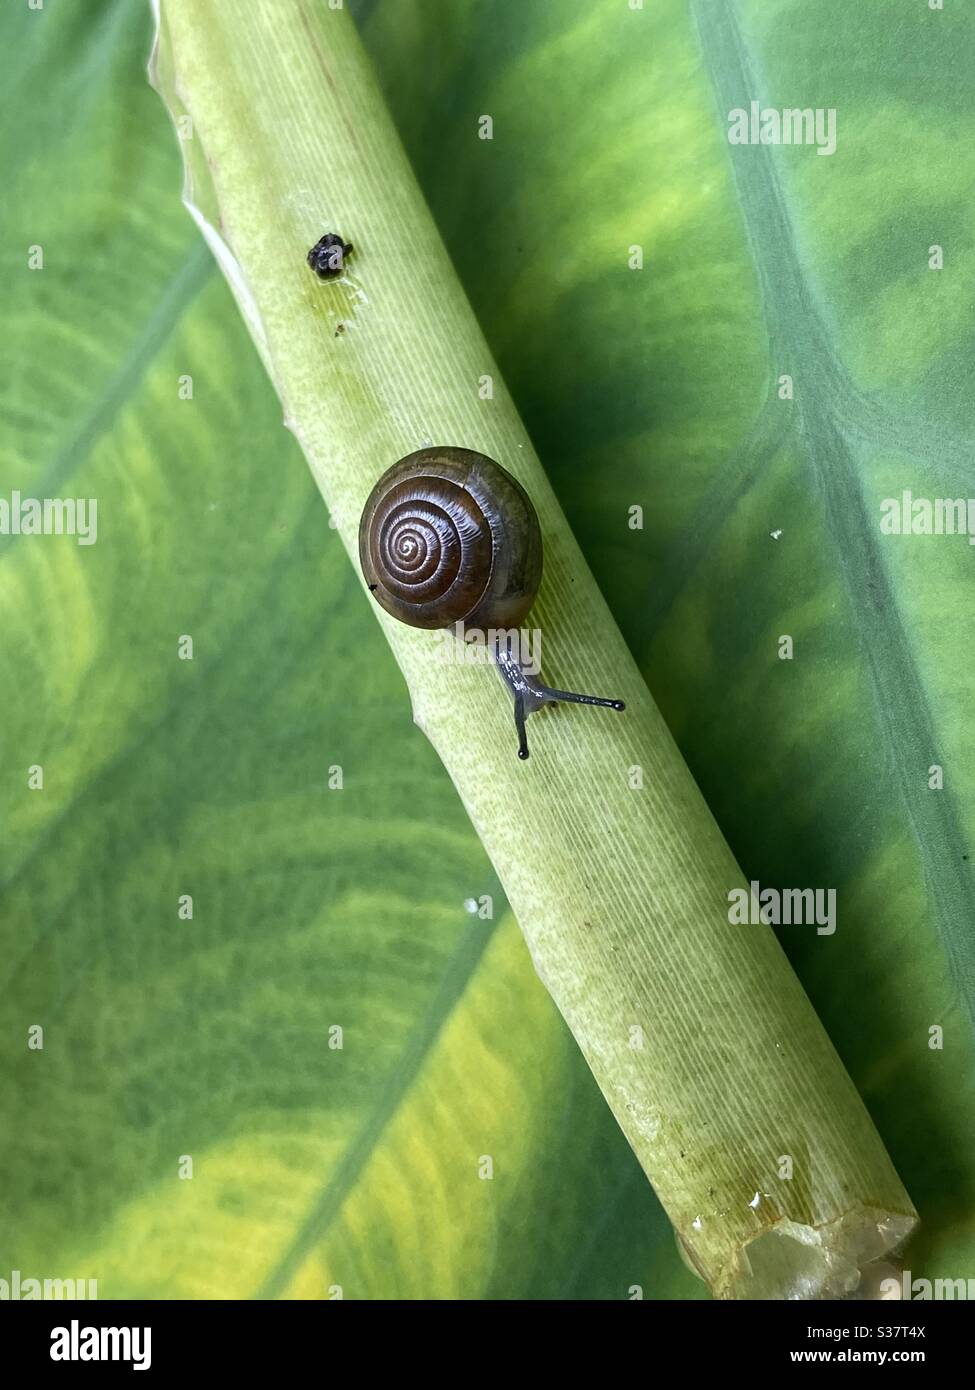 Piccola lumaca con un guscio a spirale su un gambo di pianta verde Foto Stock